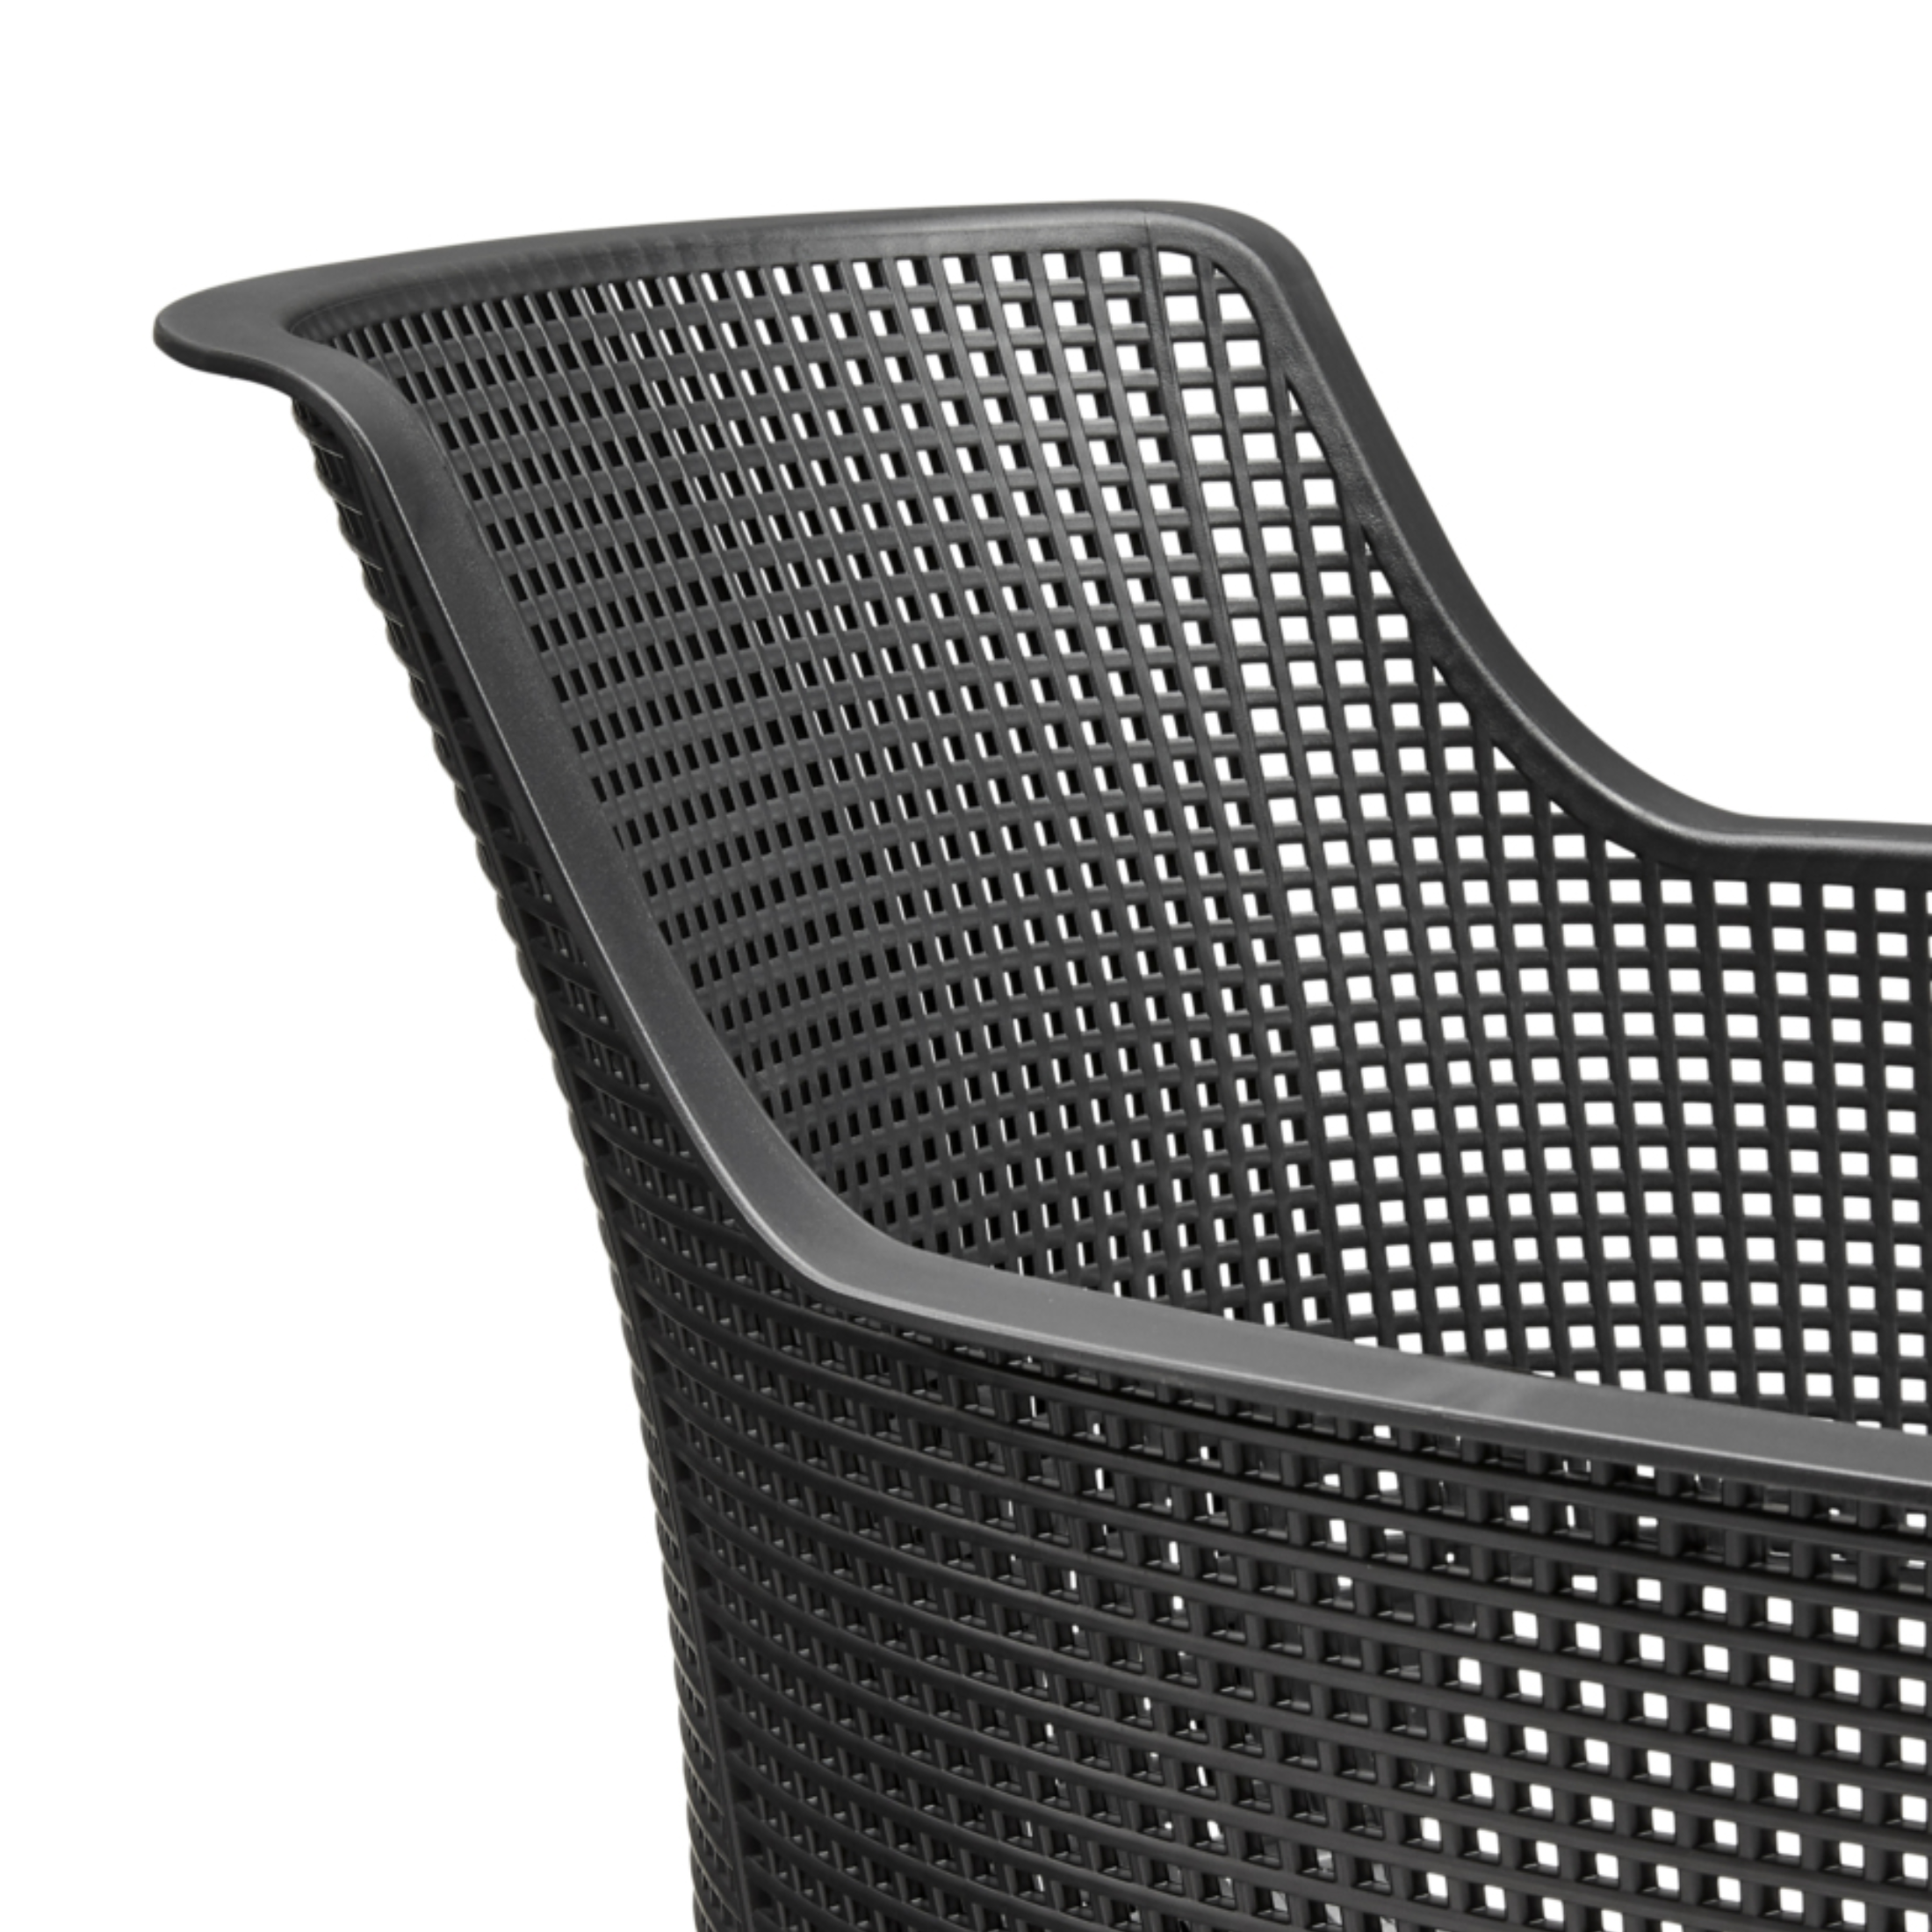 Set di 6 sedie moderne da esterno "Vancouver" in resina cm 57,7x62,5 79h